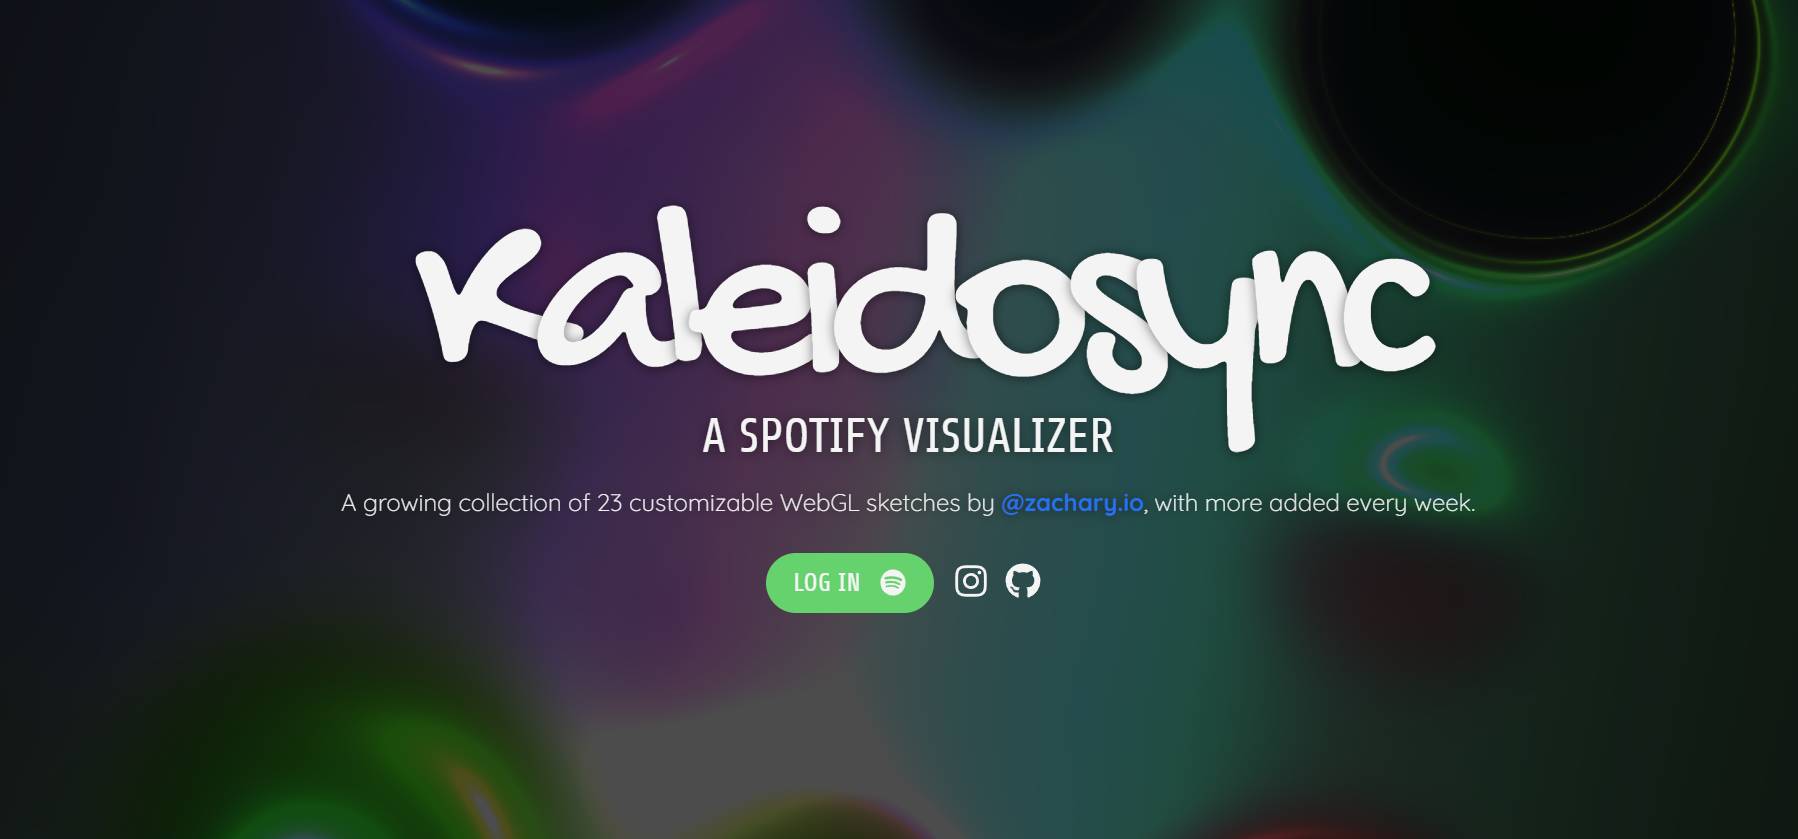 Kaleidosync 上的視覺效果 Spotify 展示台